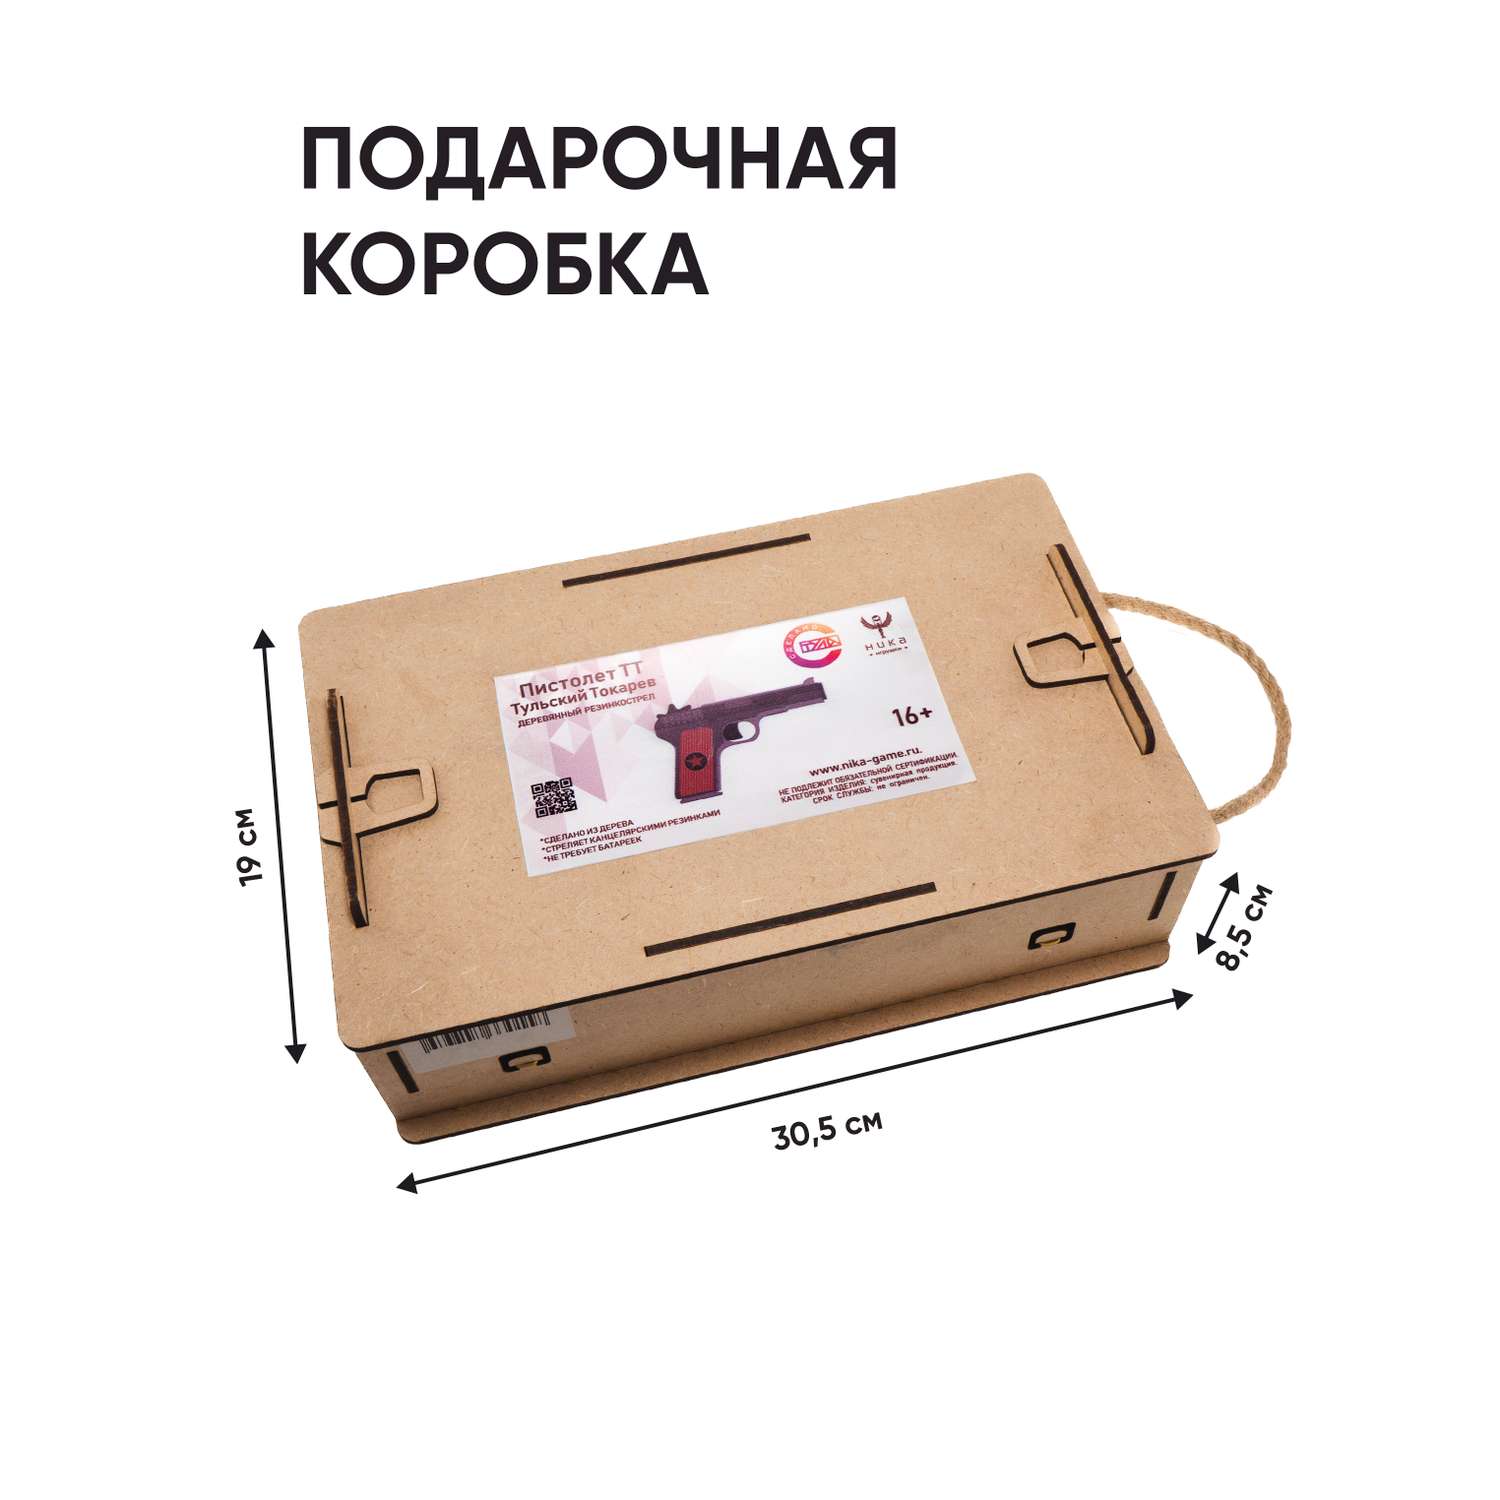 Резинкострел НИКА игрушки Пистолет ТТ в подарочной упаковке - фото 5